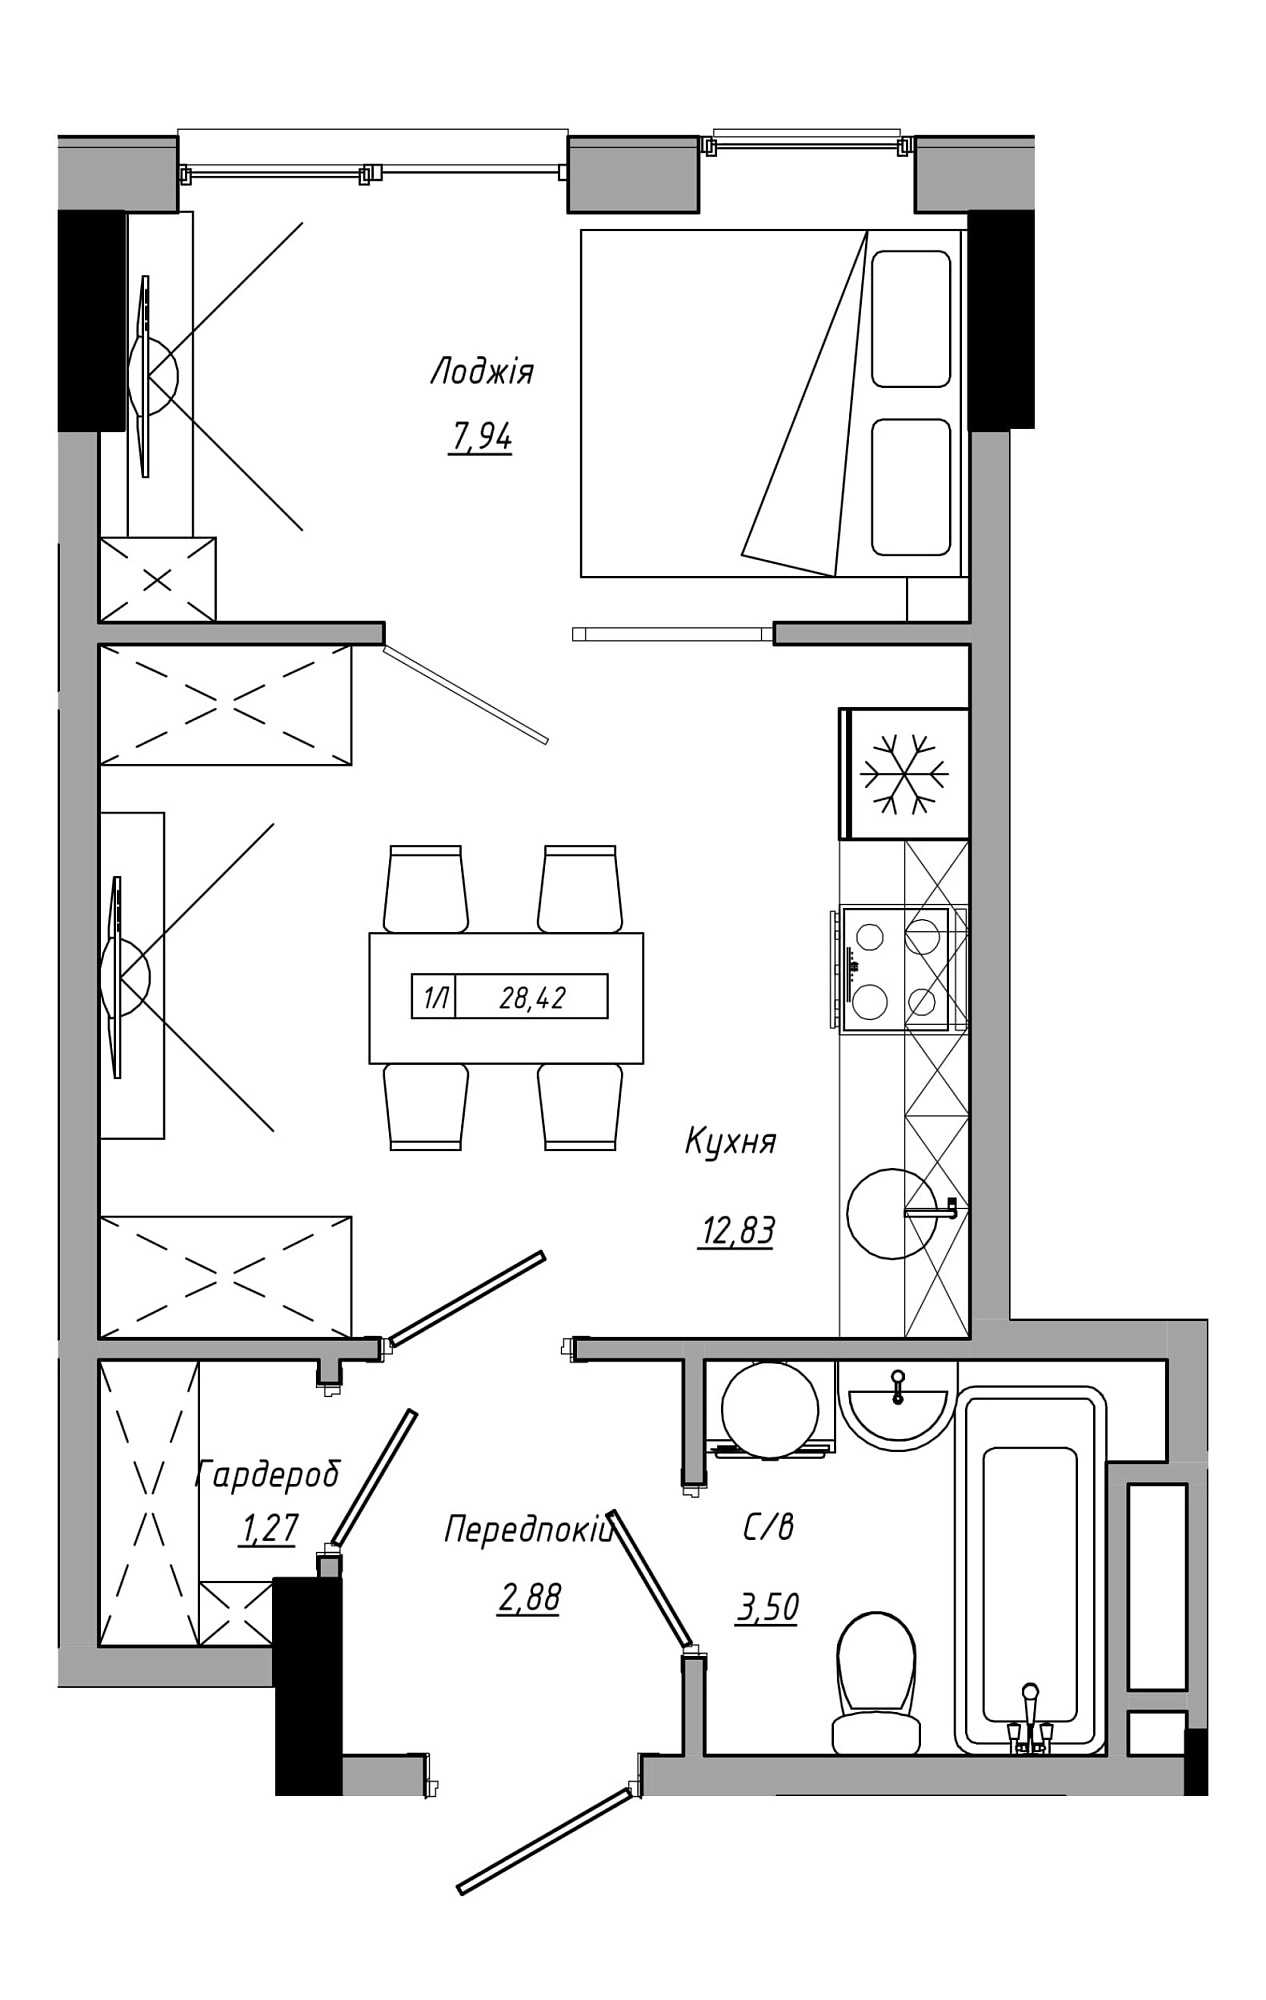 Планировка 1-к квартира площей 28.42м2, AB-21-07/00014.